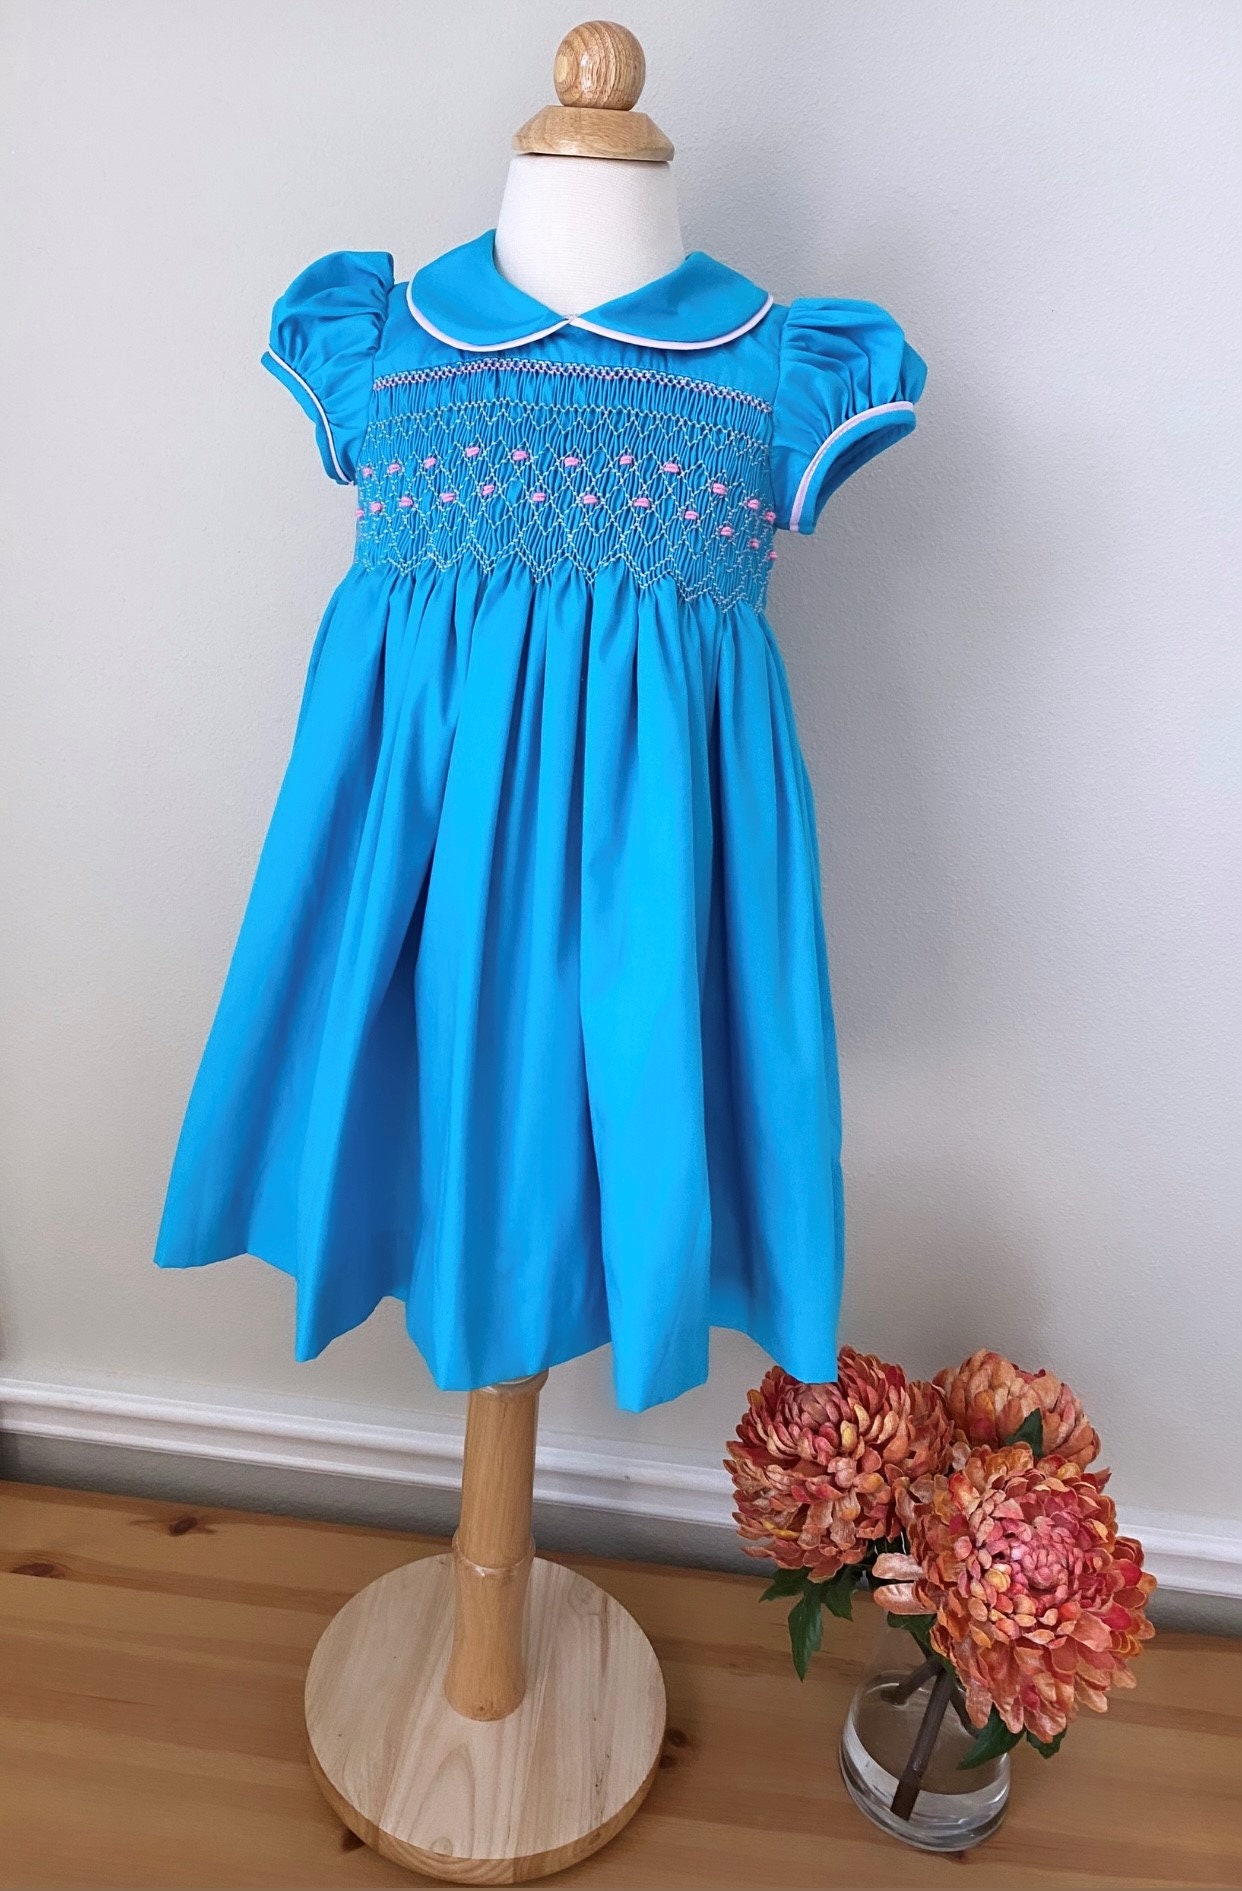 Smocked Embroidery Dress Bishop Dress Formal Dress - Etsy